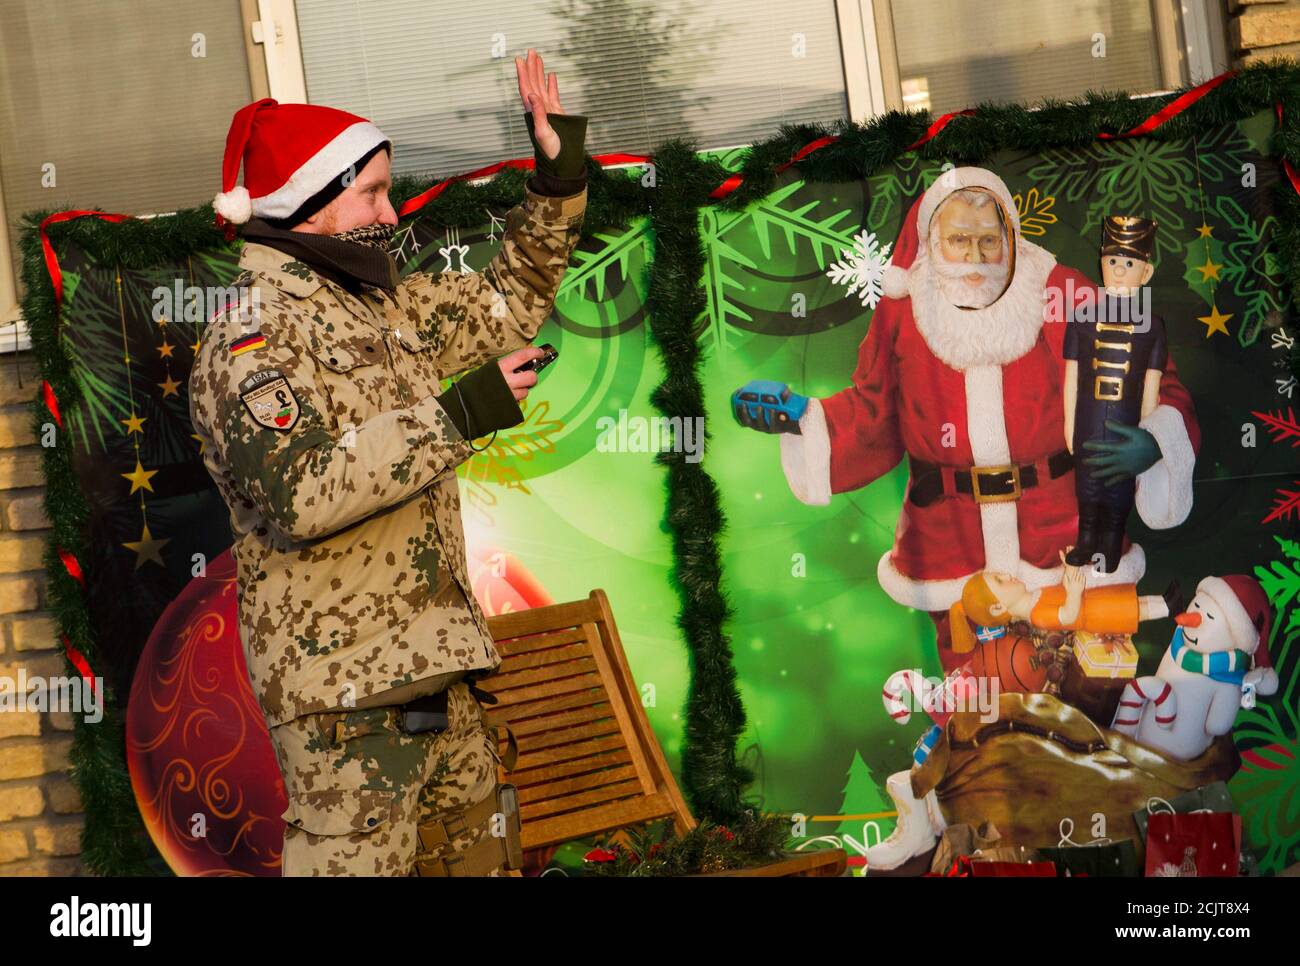 Ein Soldat der deutschen Kontingenz von der International Assistance (ISAF) trägt einen Weihnachtsmann, als er vor eine weihnachtliche Fotowand im Camp Marmal in der Nähe der nördlichen Stadt Mazar-e-Sharif 21. Dezember 2011 steht.   REUTERS/Thomas Peter (AFGHANISTAN - Tags: Unruhen militärische Politik) Stockfoto